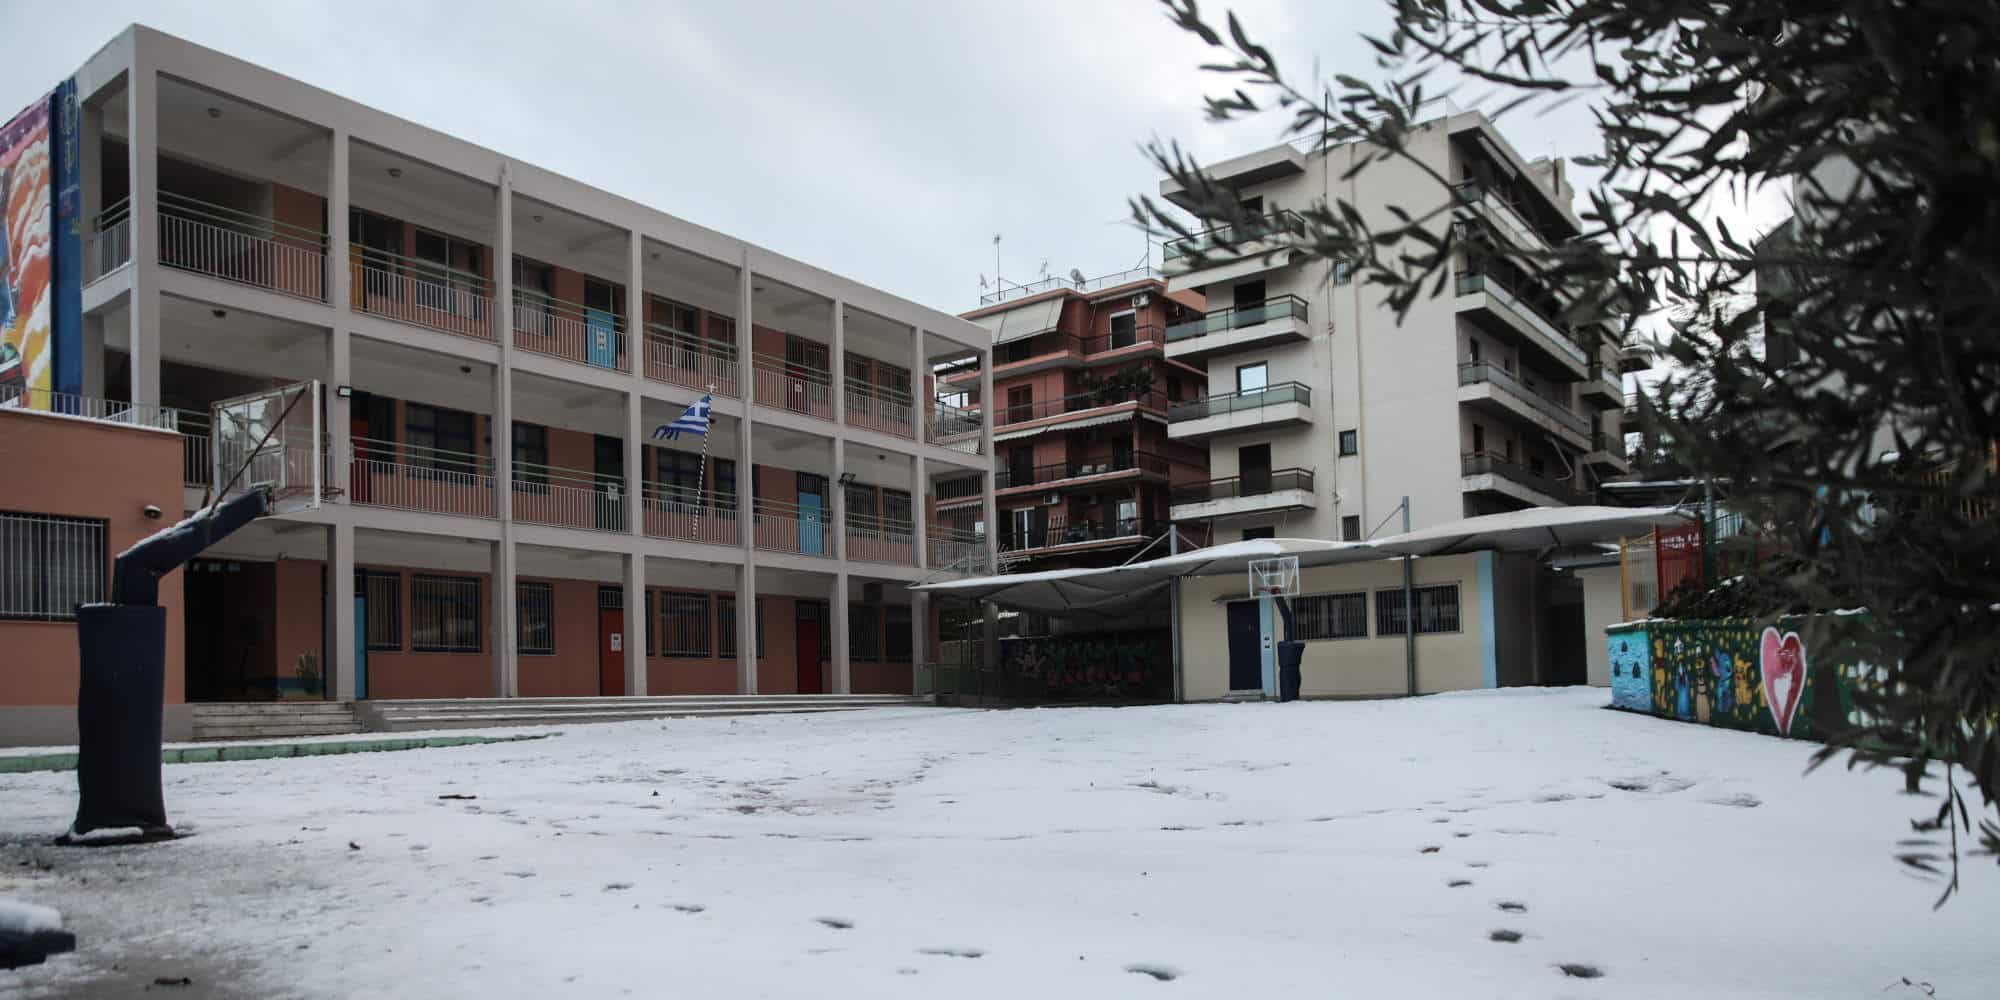 Αυλή σχολείου σκεπασμένη από χιόνι κατά την κακοκαιρία